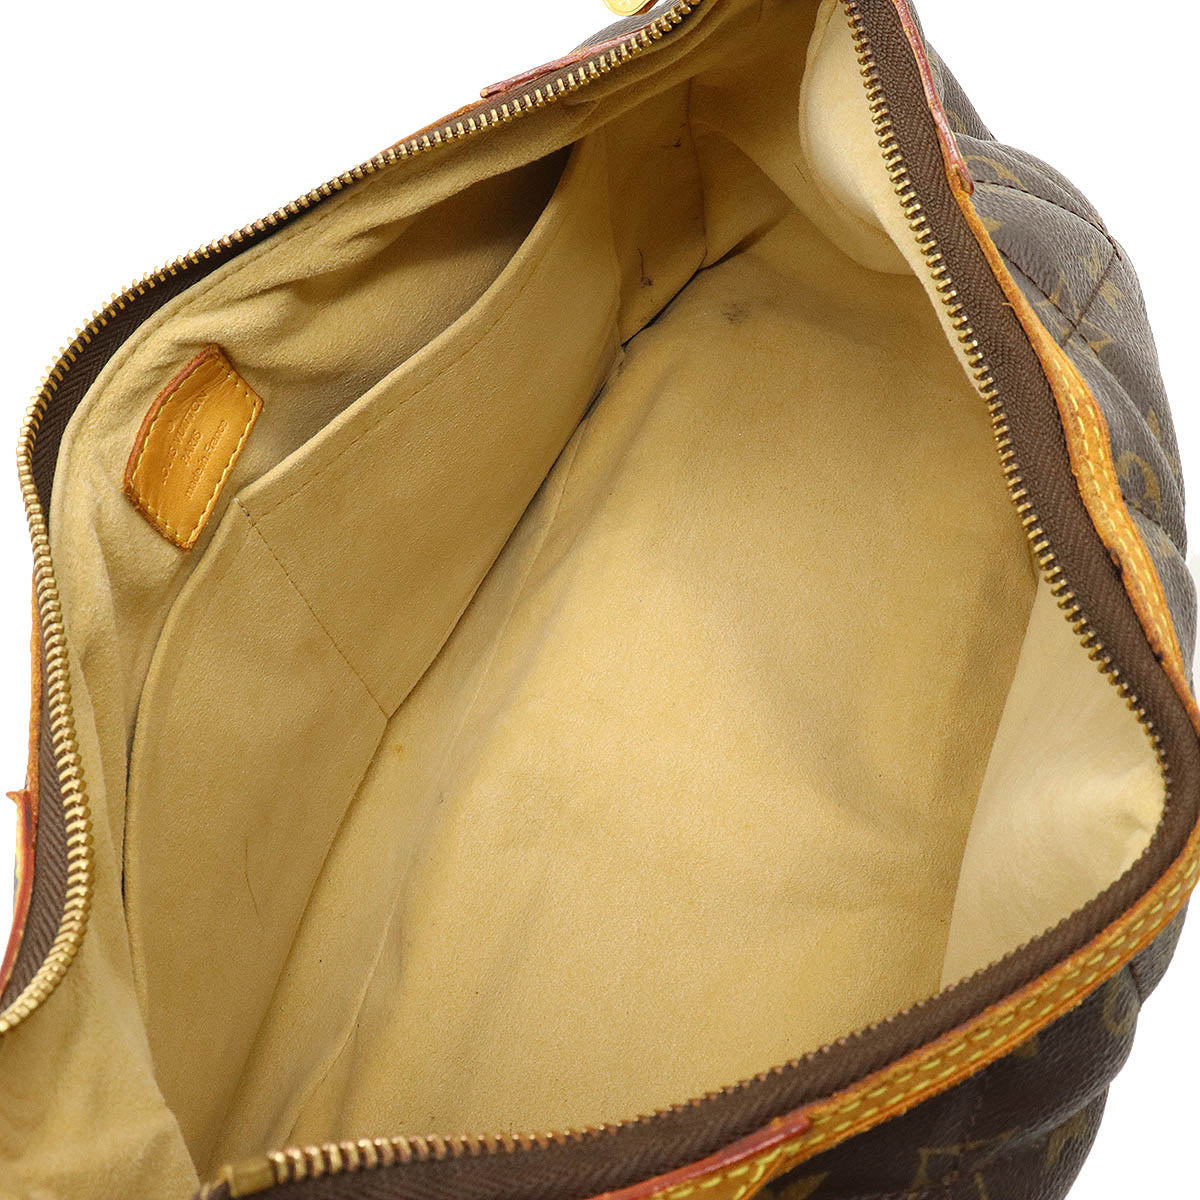 LOUIS VUITTON Etoile PM Monogram Canvas Shoulder Bag